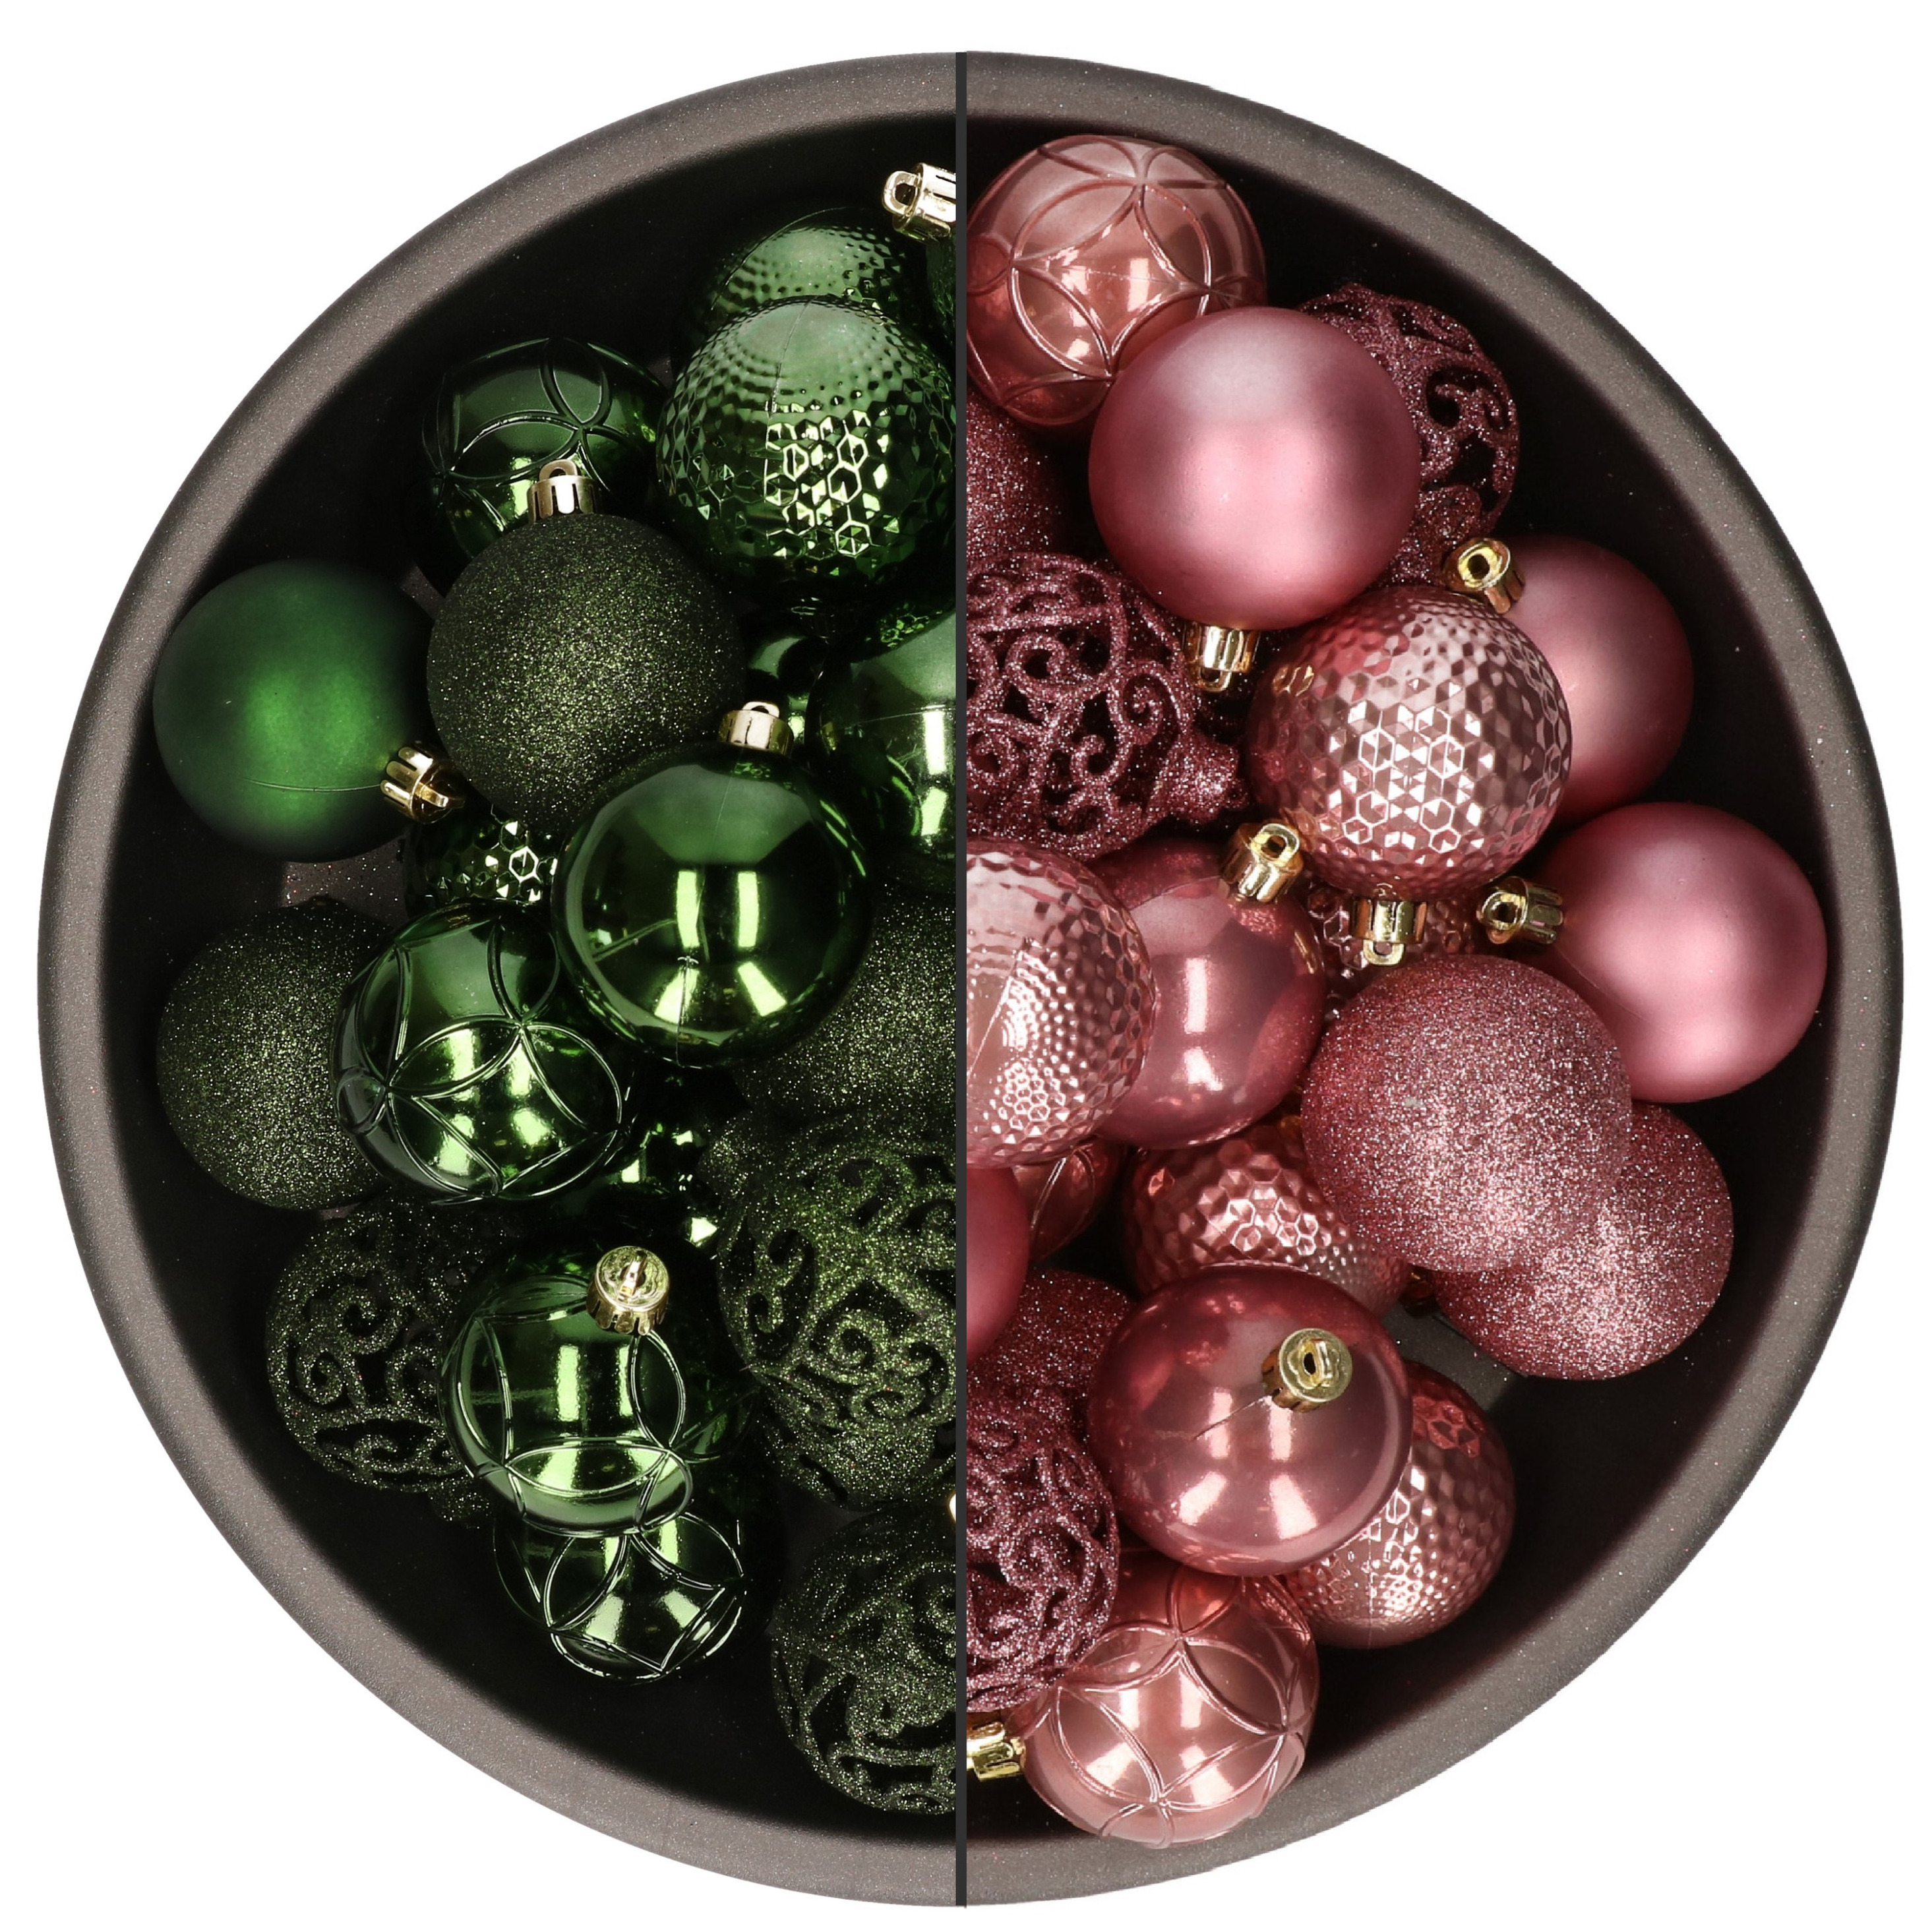 74x stuks kunststof kerstballen mix van velvet roze en donkergroen 6 cm